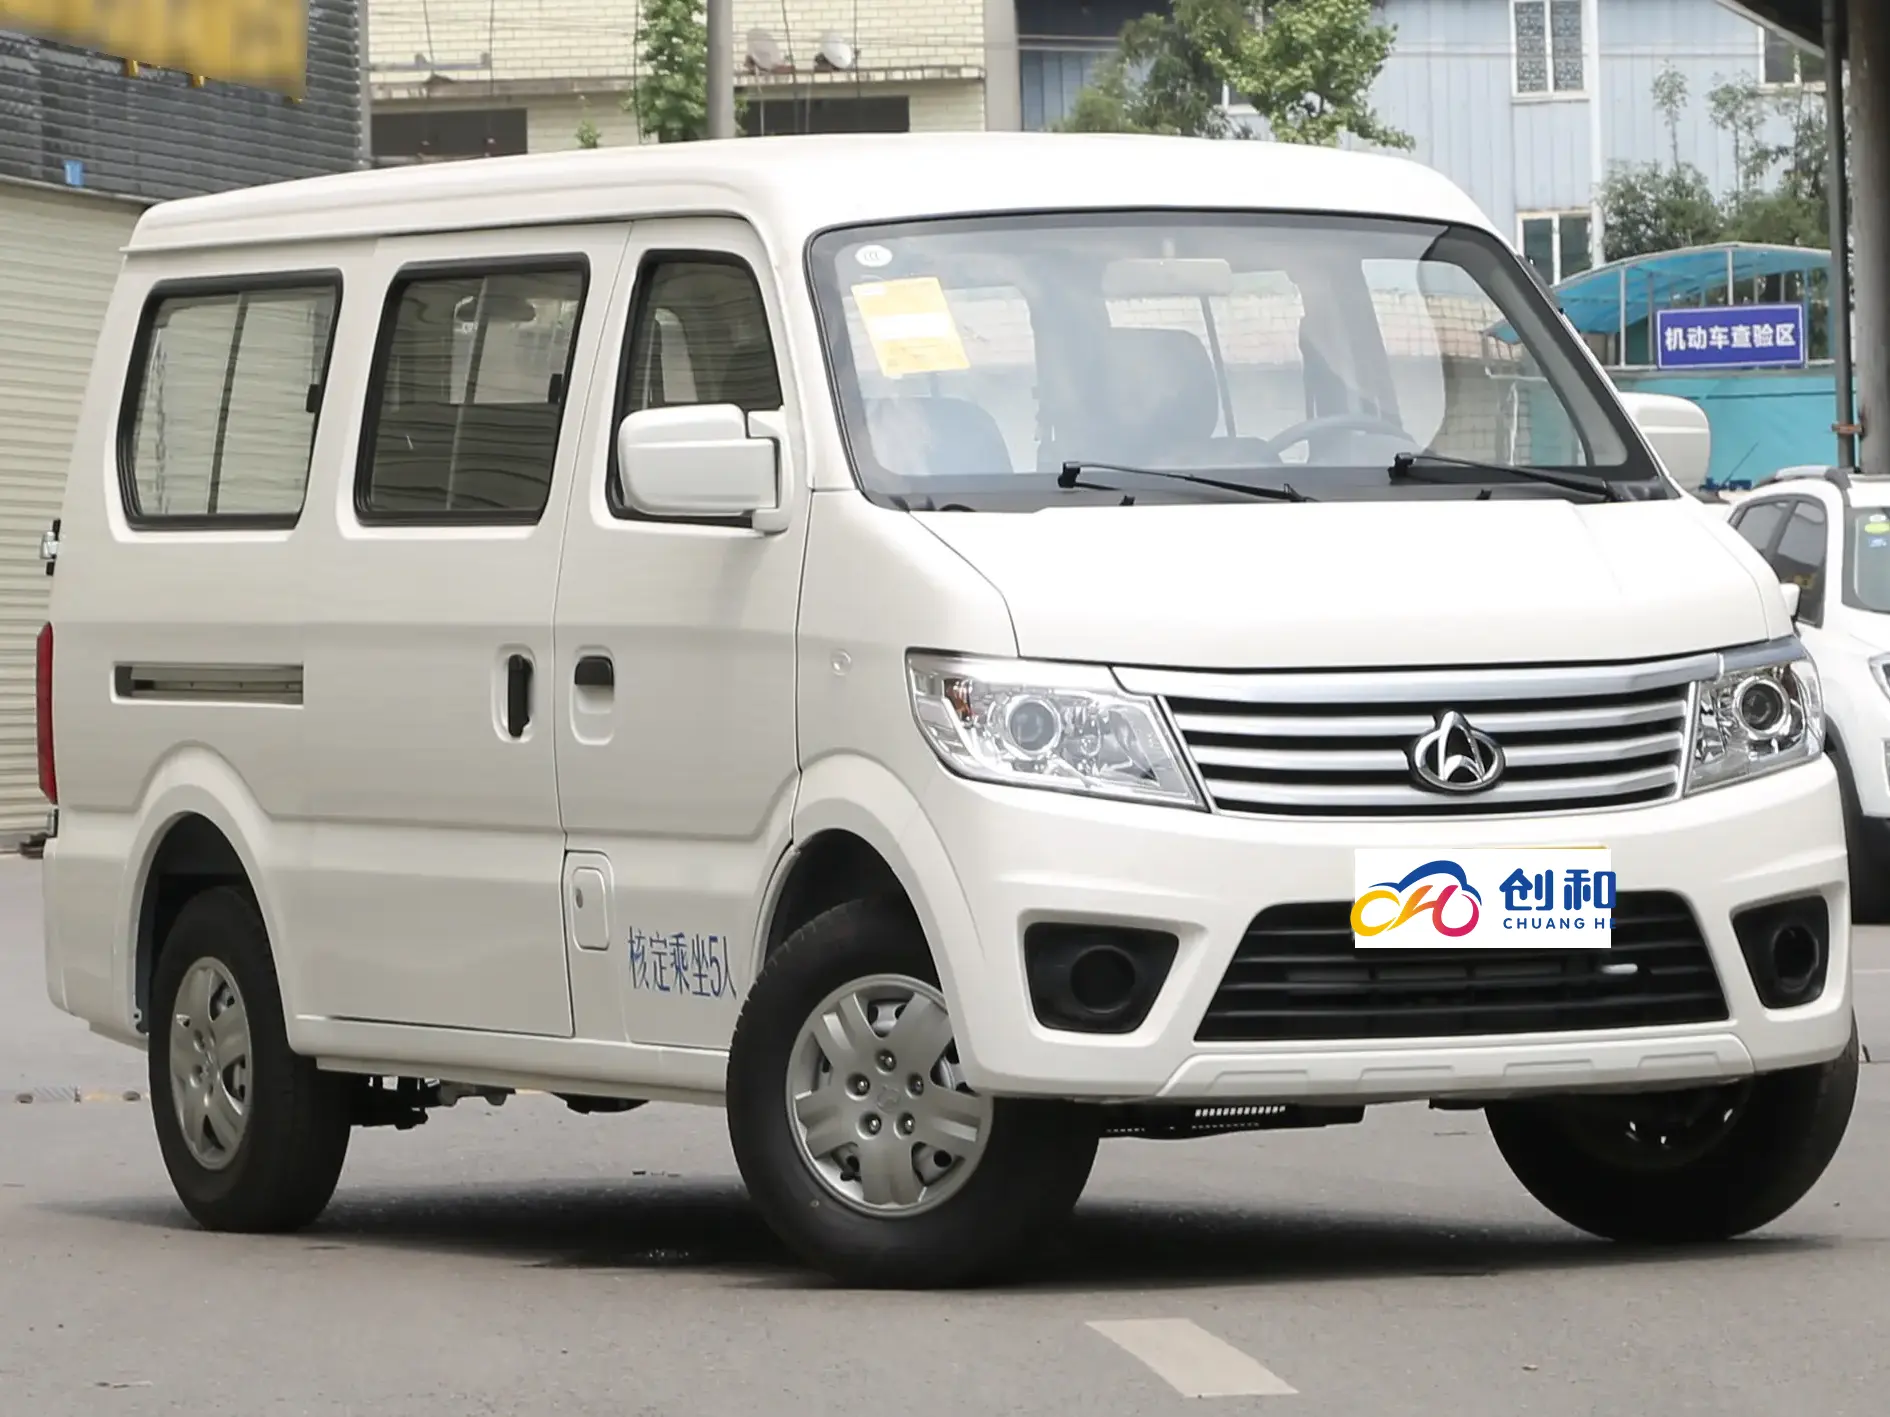 Sıcak satış yıldız 9 çin yeni Changan Mini van yüksek performanslı benzin cıvıltı Van binek otomobil changan kaicheng yıldız 9